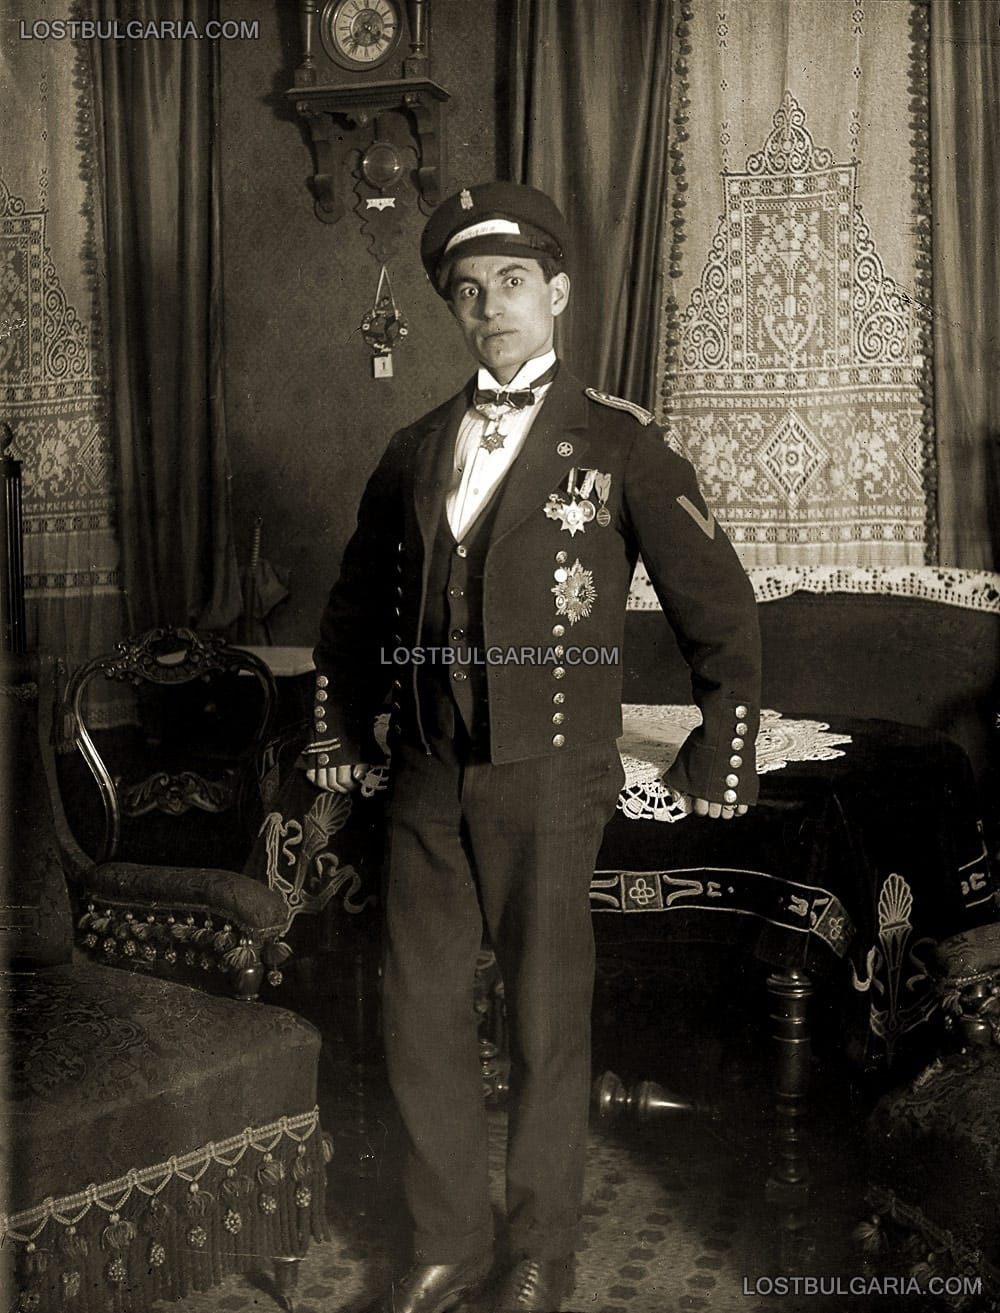 Млад мъж, облечен в бутафорна униформа, на фона на интериор от началото на ХХ век